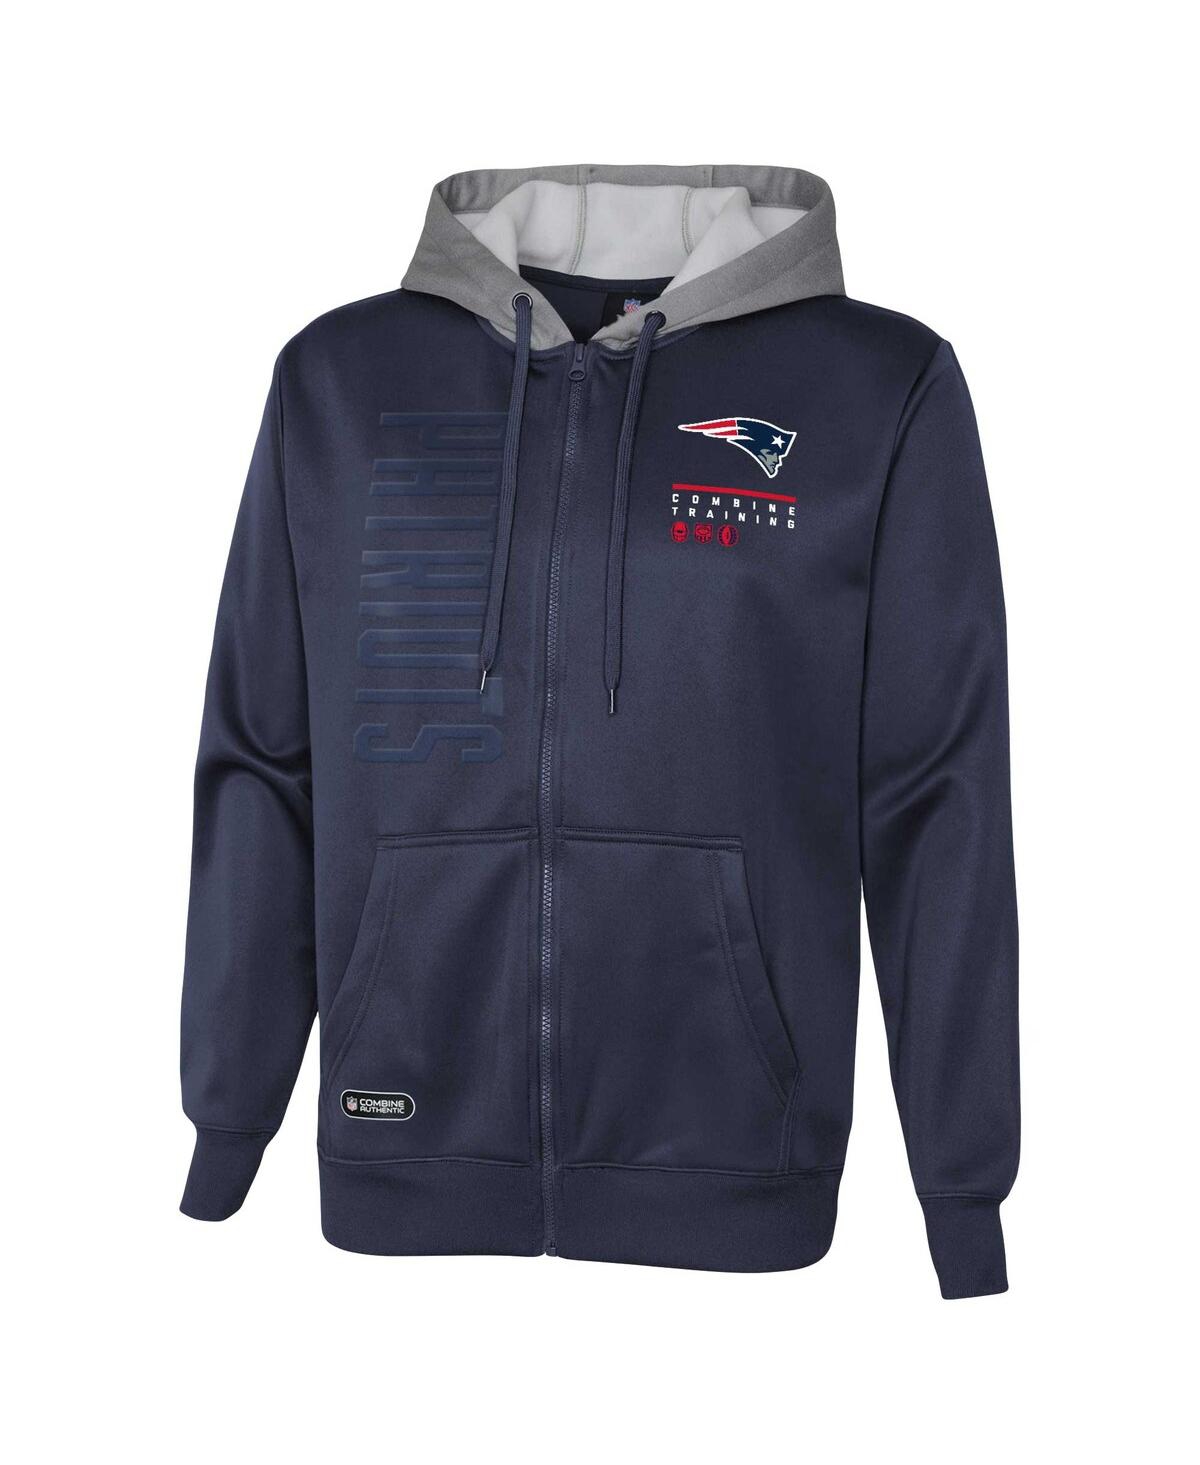 Shop Outerstuff Men's Navy New England Patriots Combine Authentic Field Play Full-zip Hoodie Sweatshirt